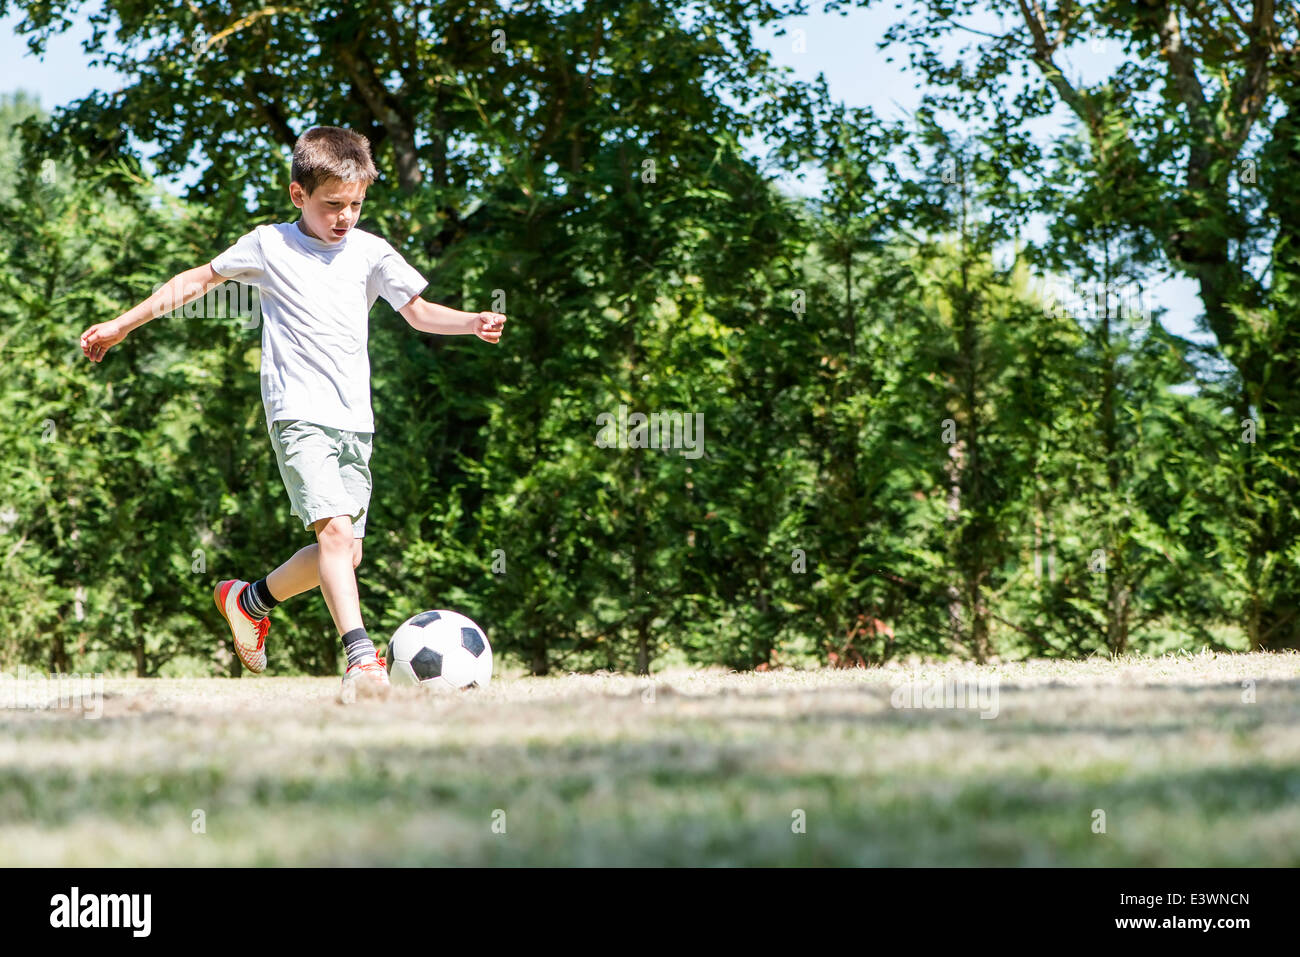 Enfant jouant au football dans un stade. Des arbres sur l'arrière-plan Banque D'Images